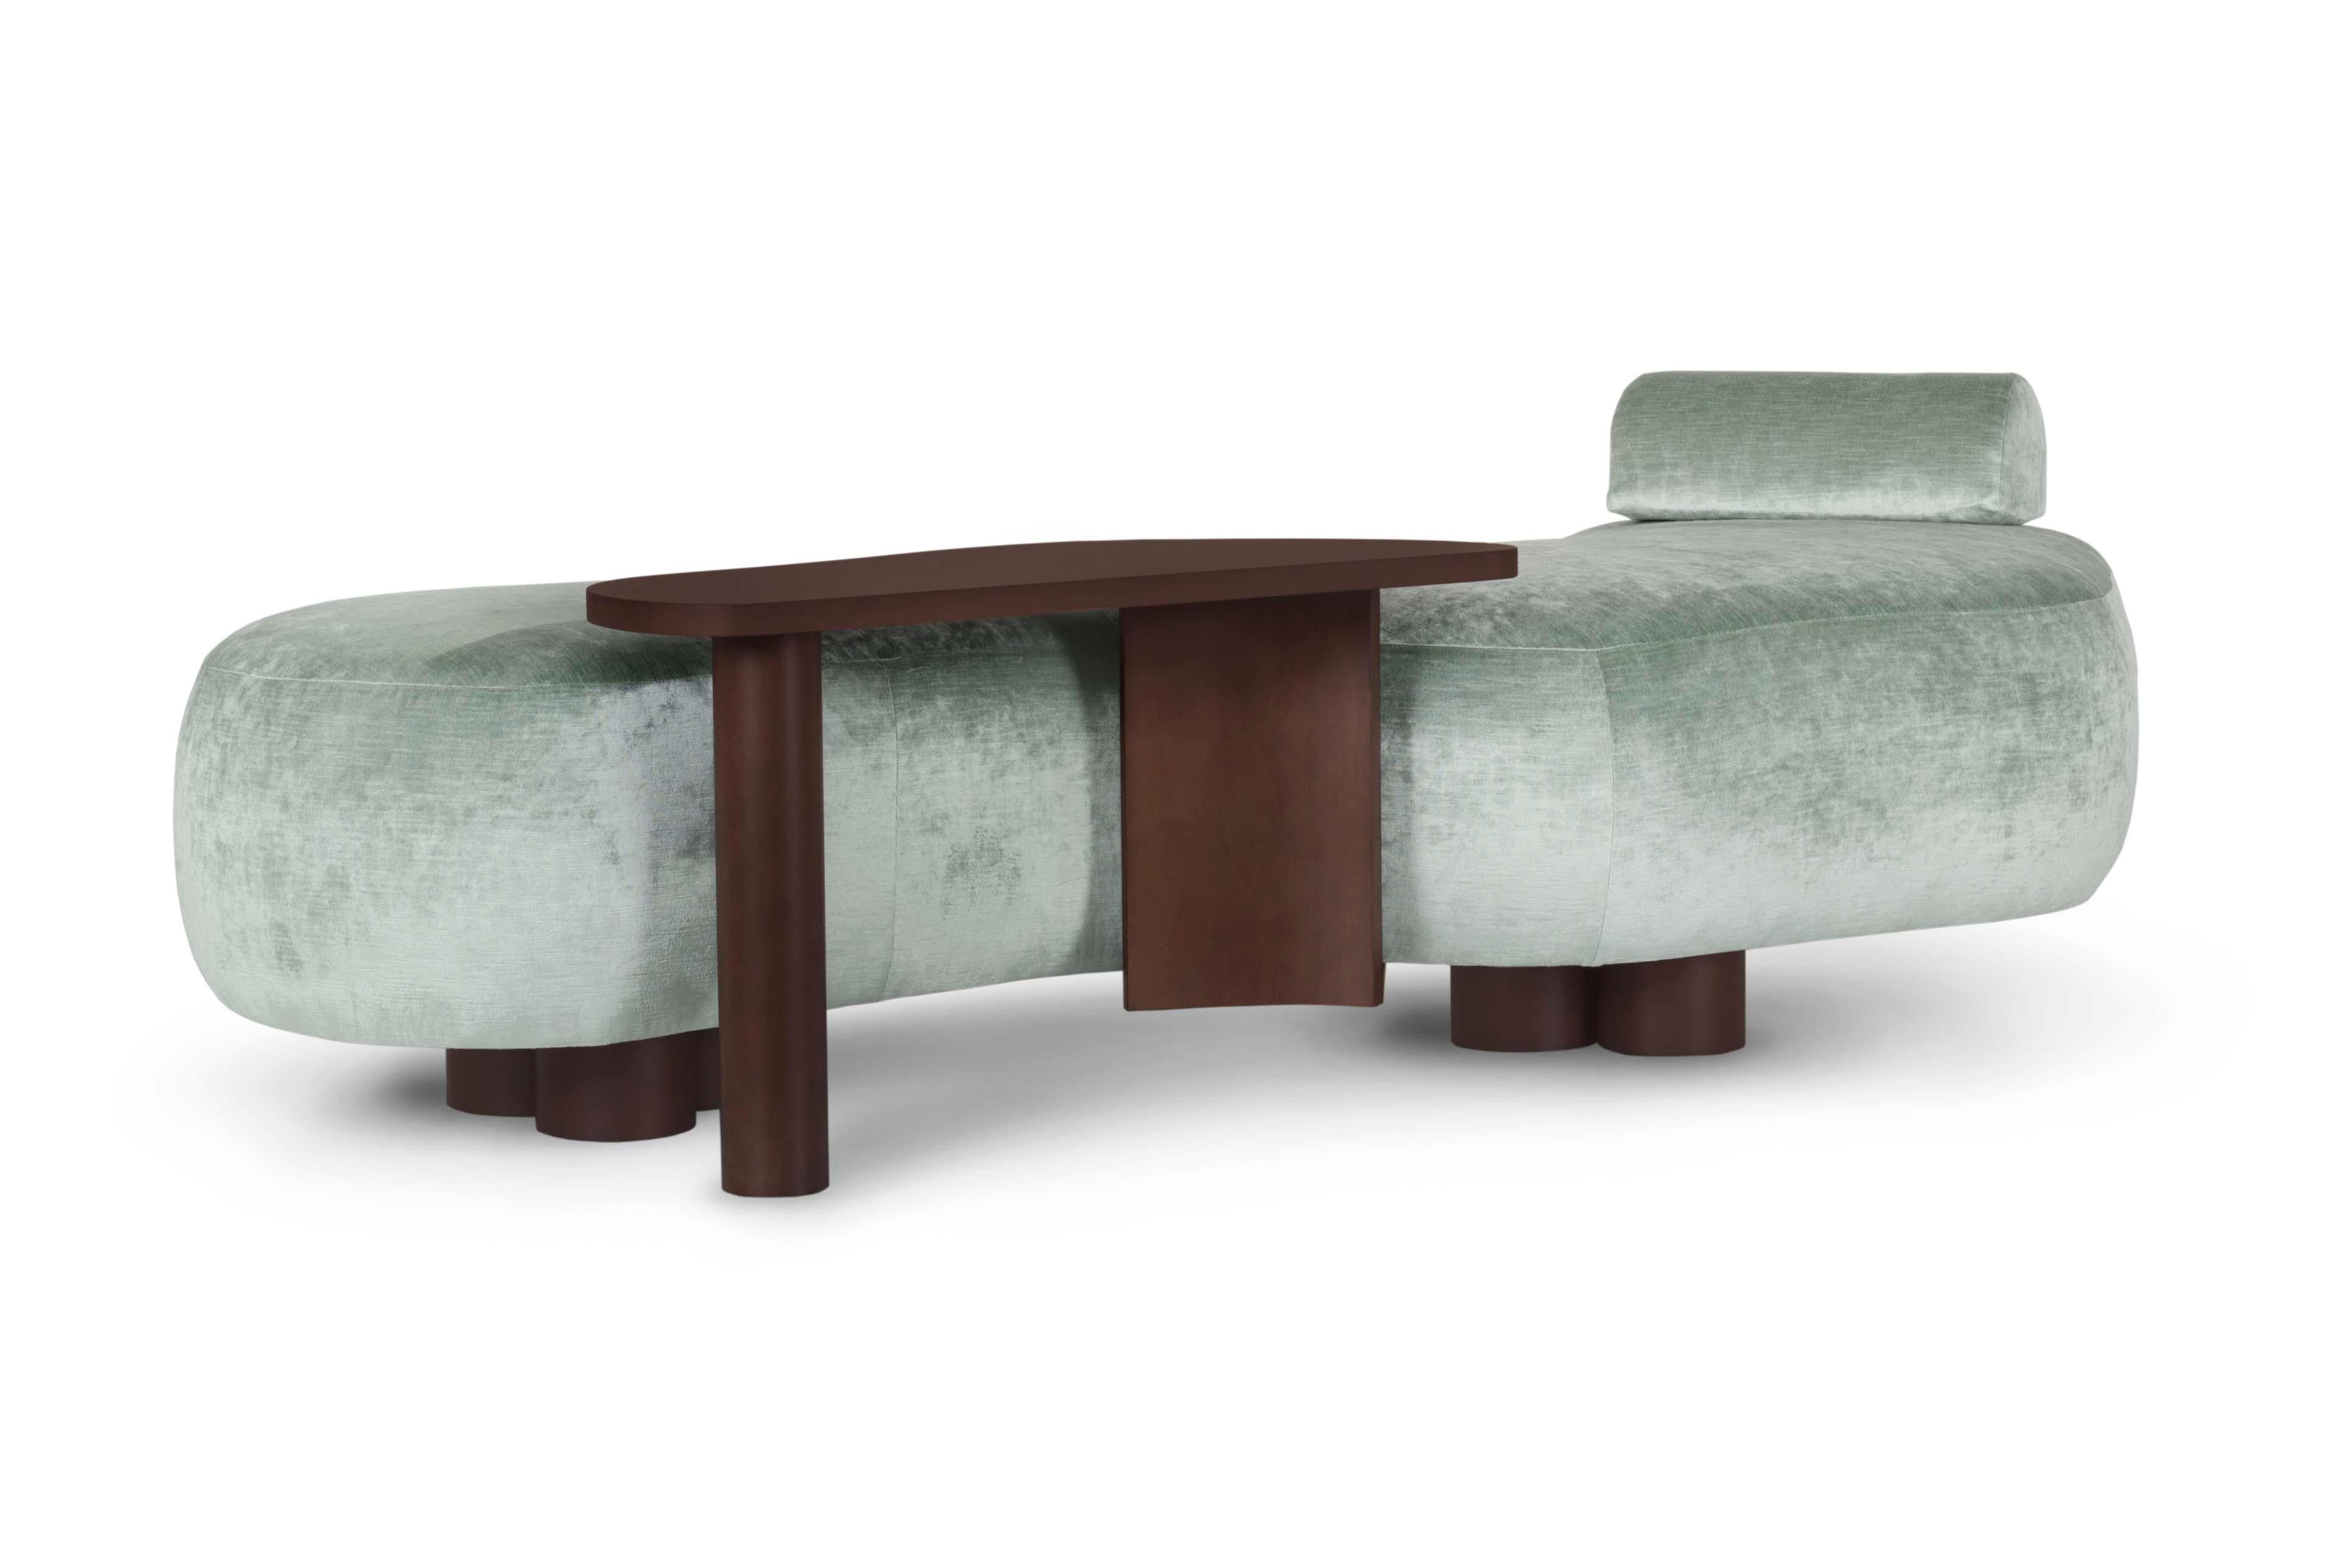 Minho Chaise Lounge, Contemporary Collection, handgefertigt in Portugal - Europa von Greenapple.

Die von Rute Martins für die Contemporary Collection entworfene Chaiselongue Minho mit einem Beistelltisch aus Holz ist eine moderne Interpretation des